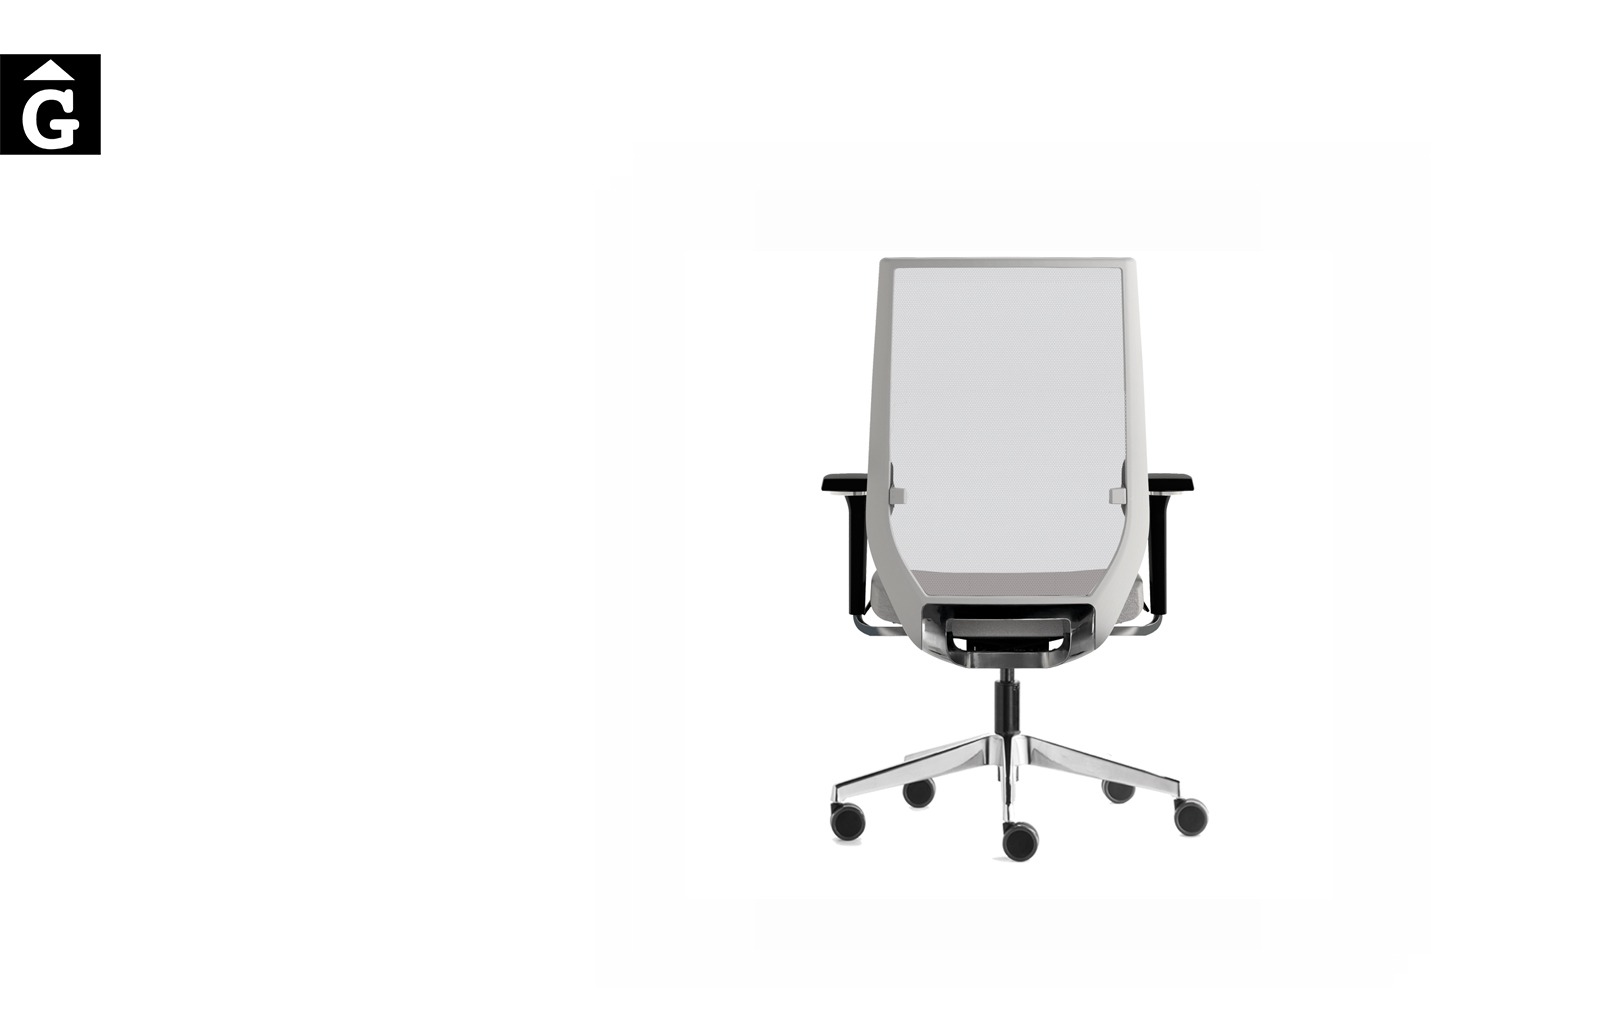 Cadira Operativa Eben | Disseny d’Ito Design |Forma 5 | mobiliari d’oficina molt interessant | mobles Gifreu | botiga | Contract | Mobles nous d’oficina